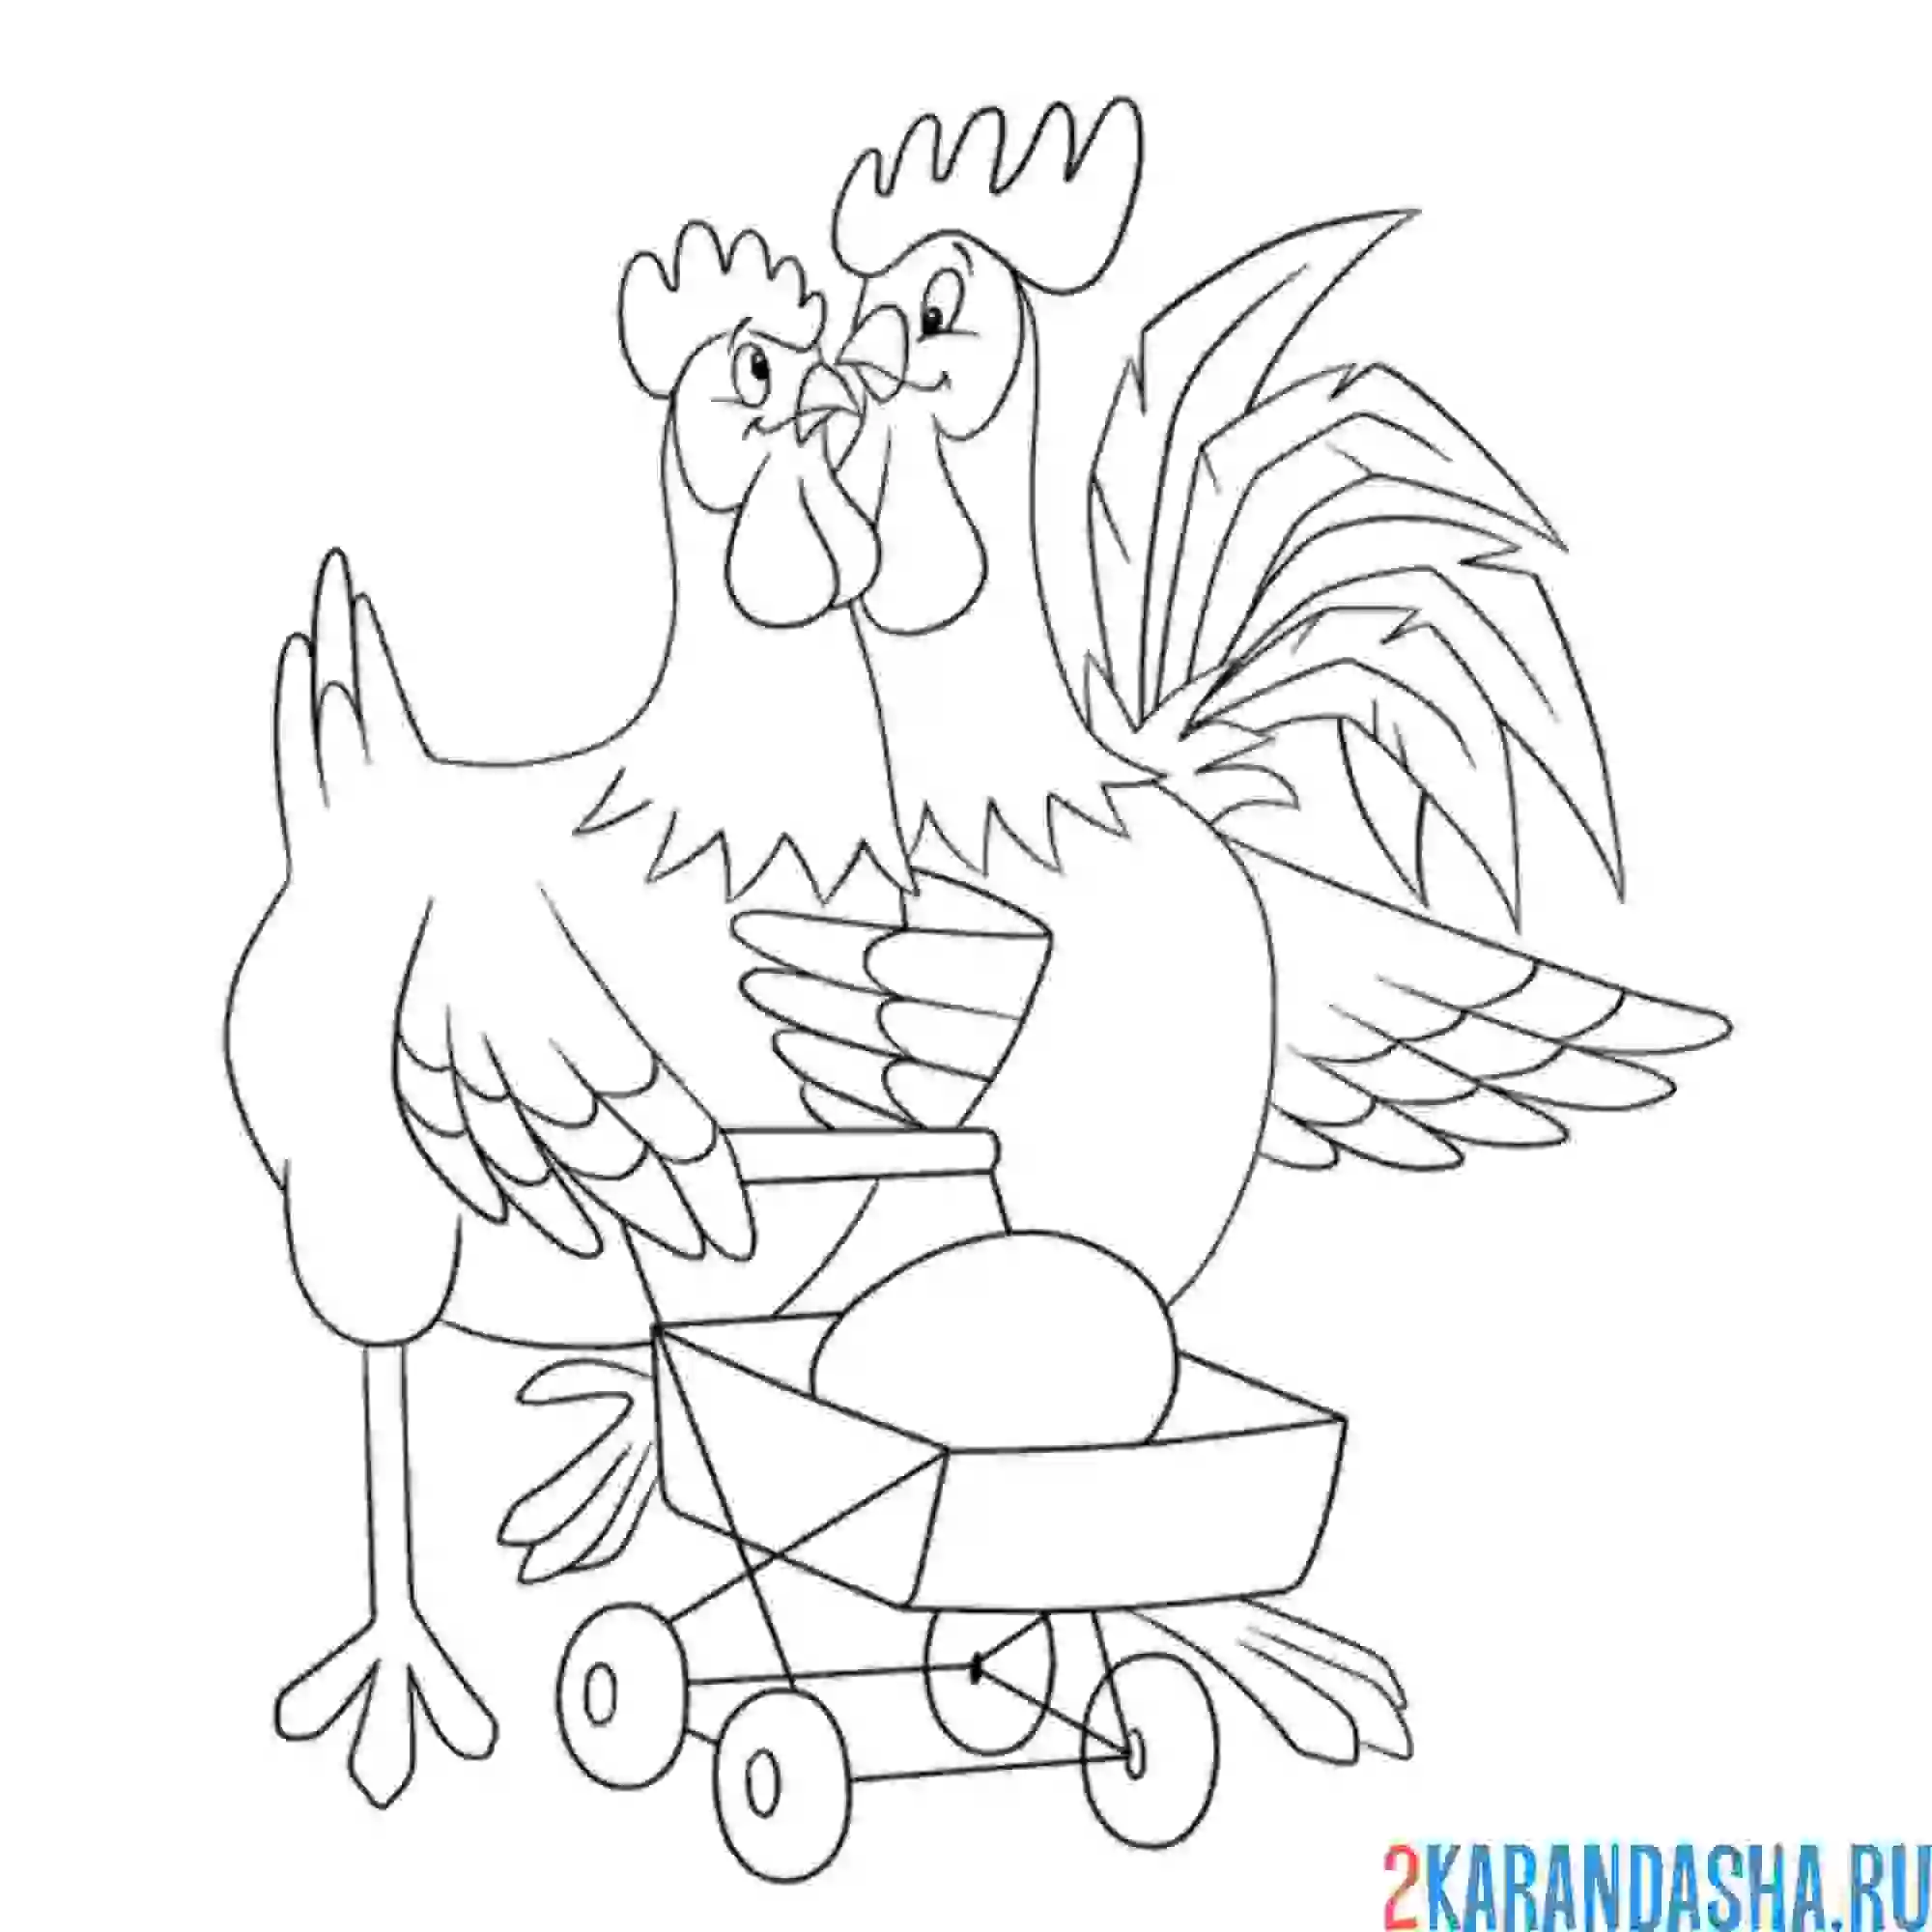 Раскраска петух и курица стали родителями